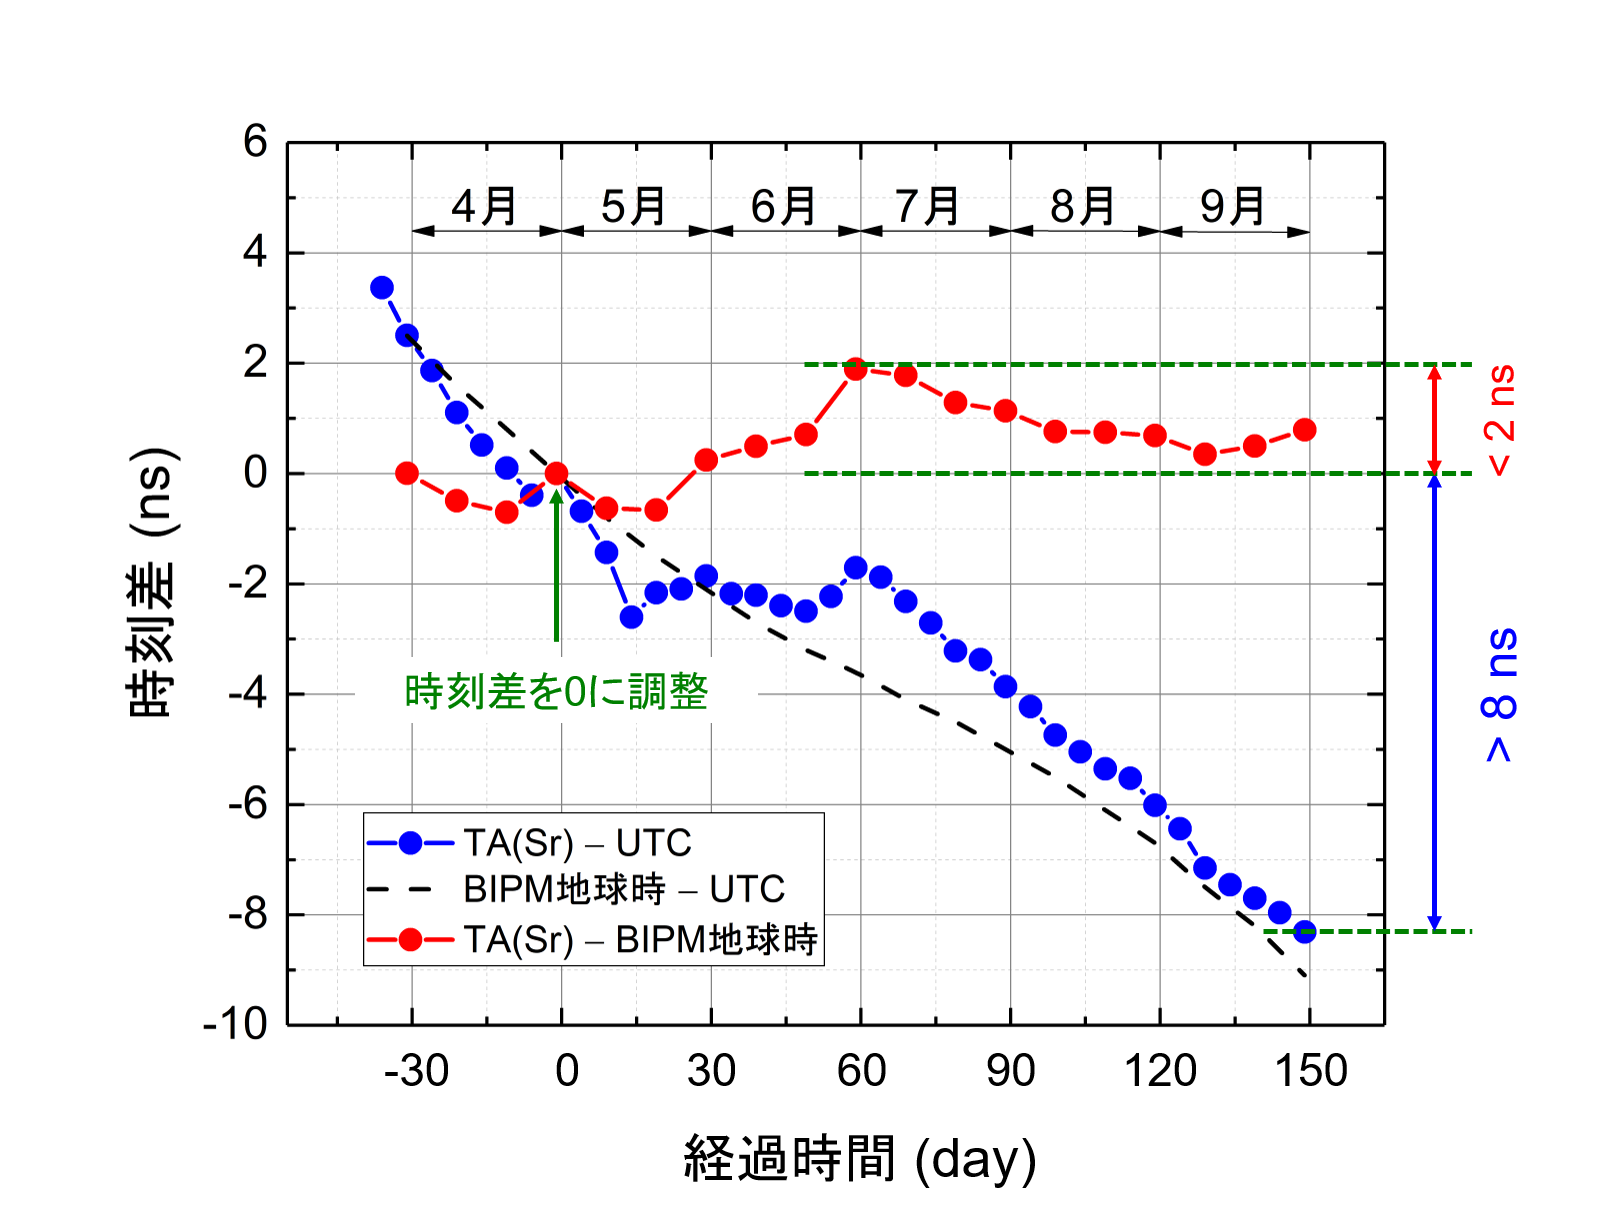 図6. 2016年に生成した光格子時計を用いた高精度な時刻実信号TA(Sr)。青線と赤線はそれぞれTA(Sr)とUTC, TA(Sr)とBIPM地球時の時刻差。5月の初めに時刻差を0に調整している。黒破線はBIPM地球時とUTCの時刻差。